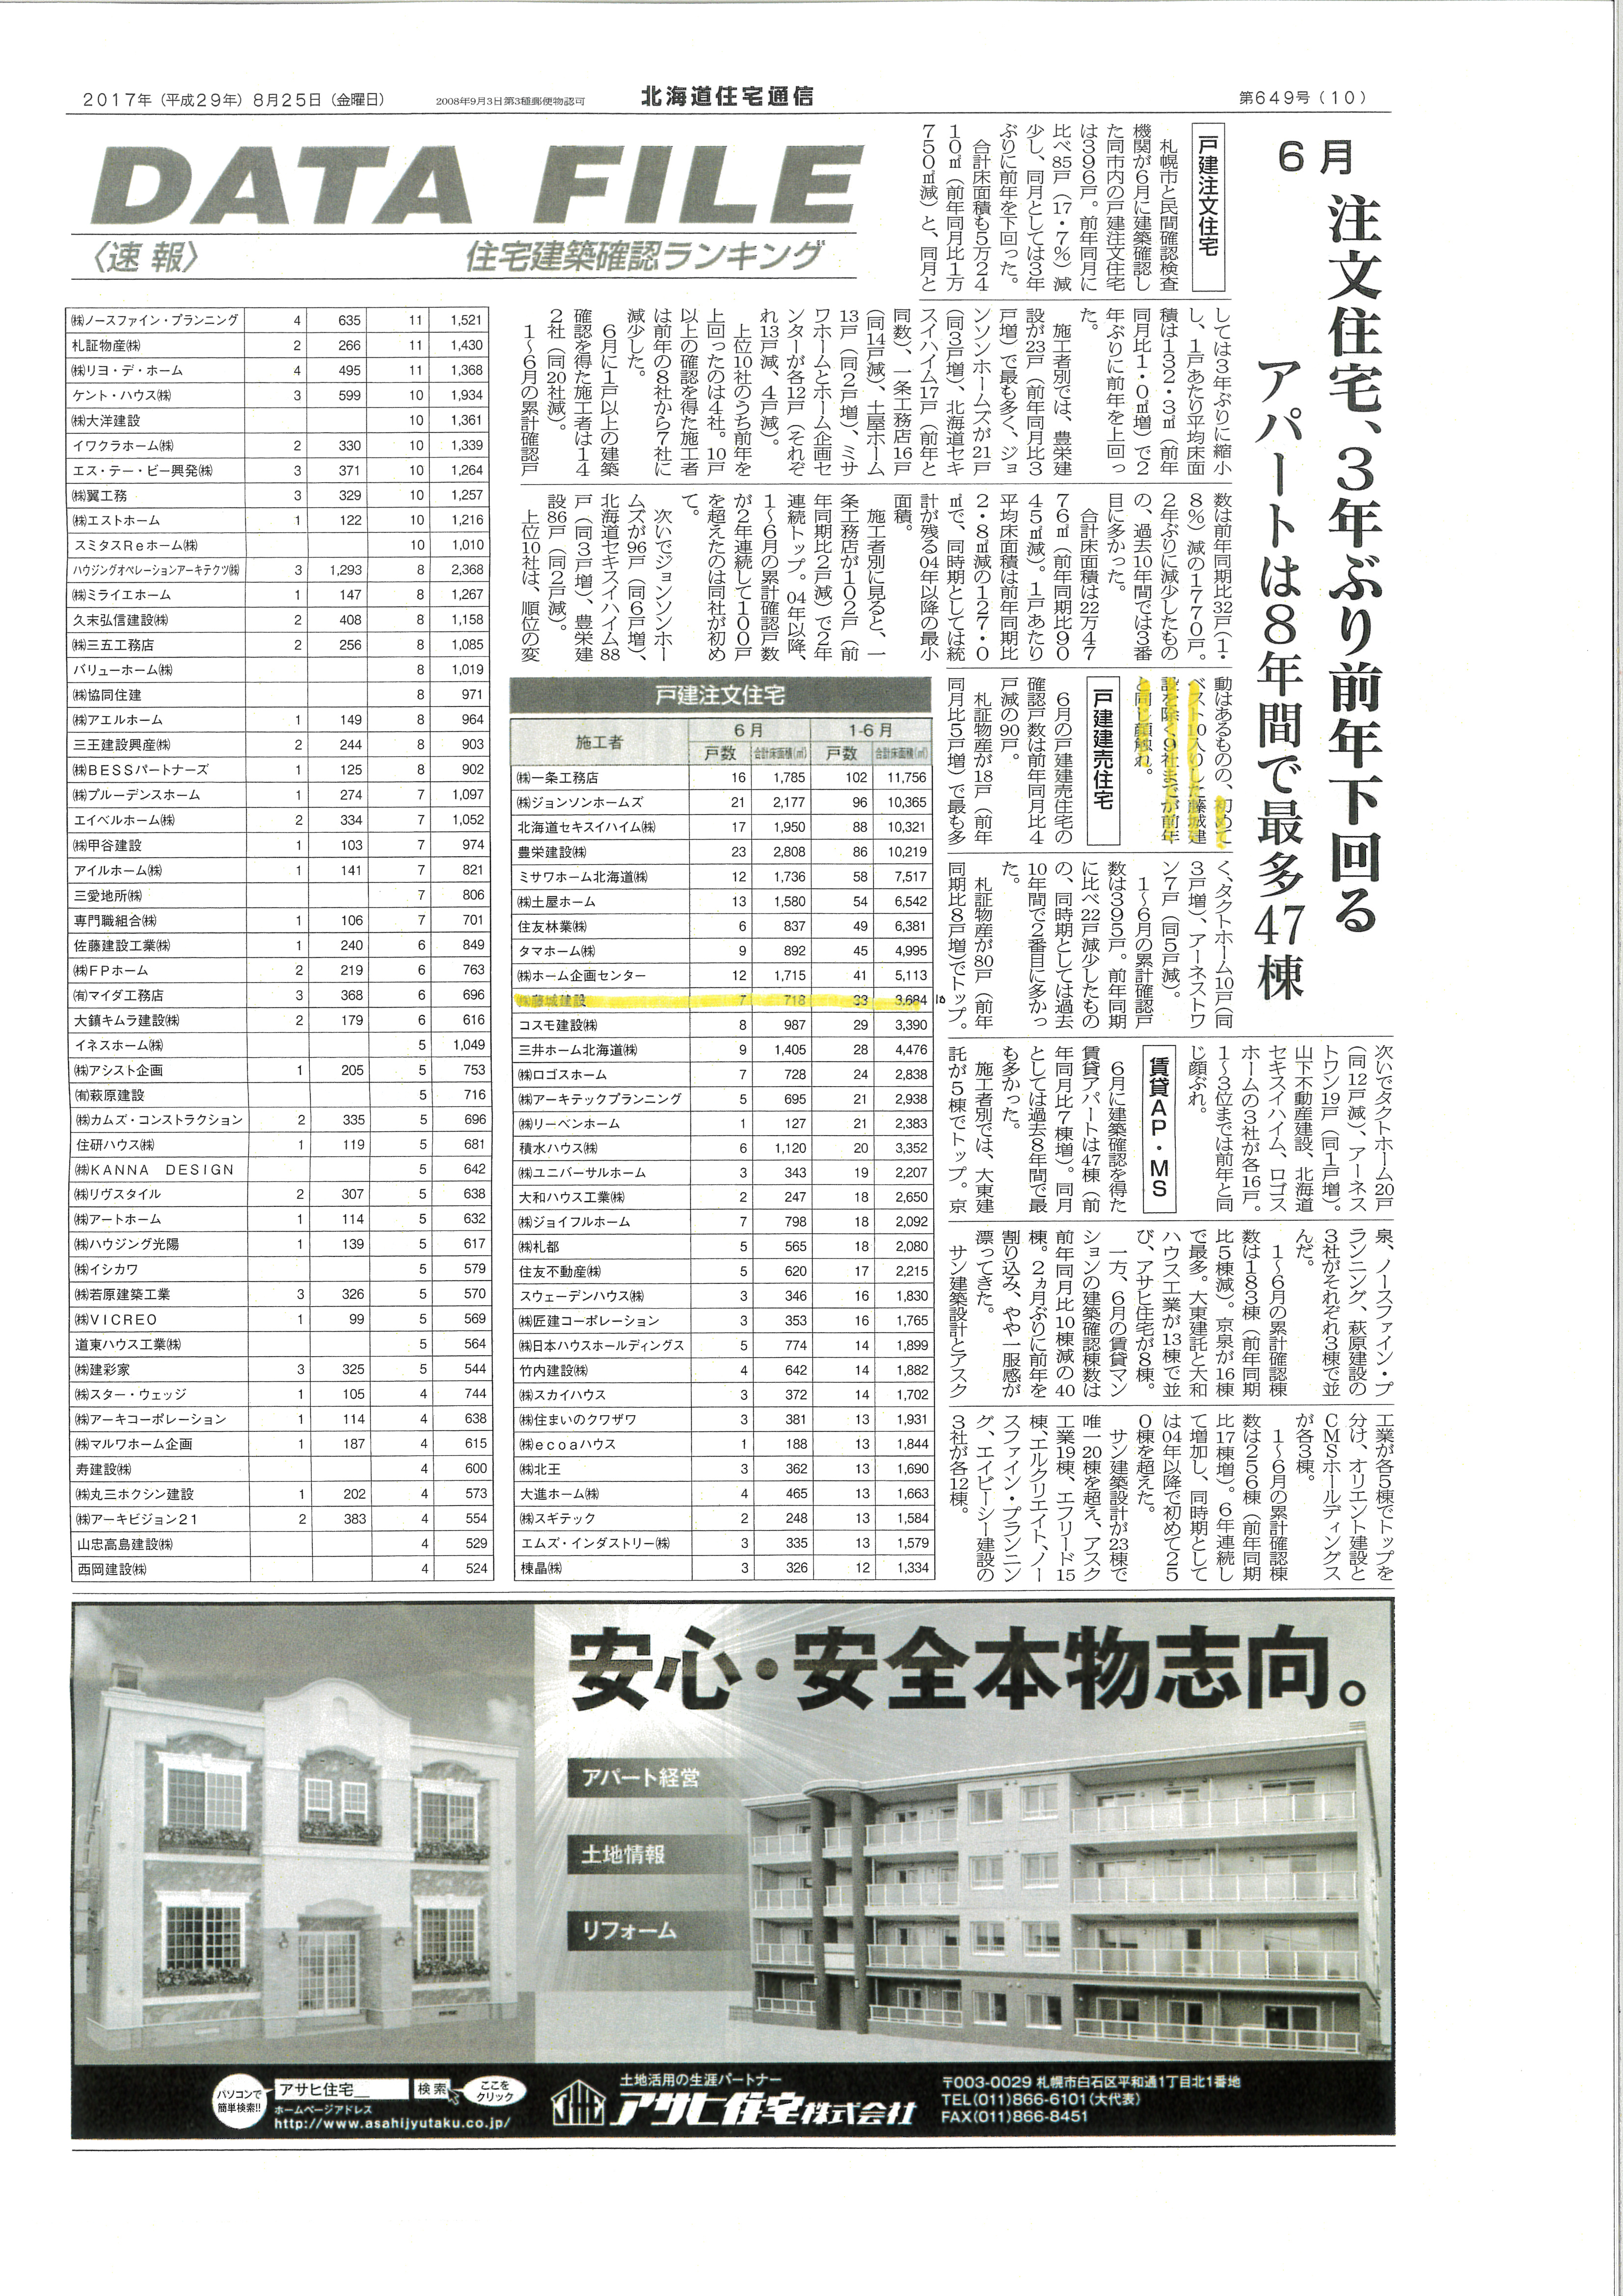 戸建注文住宅ベスト10入り ゆきだるまのお家 札幌市のローコスト住宅 注文住宅